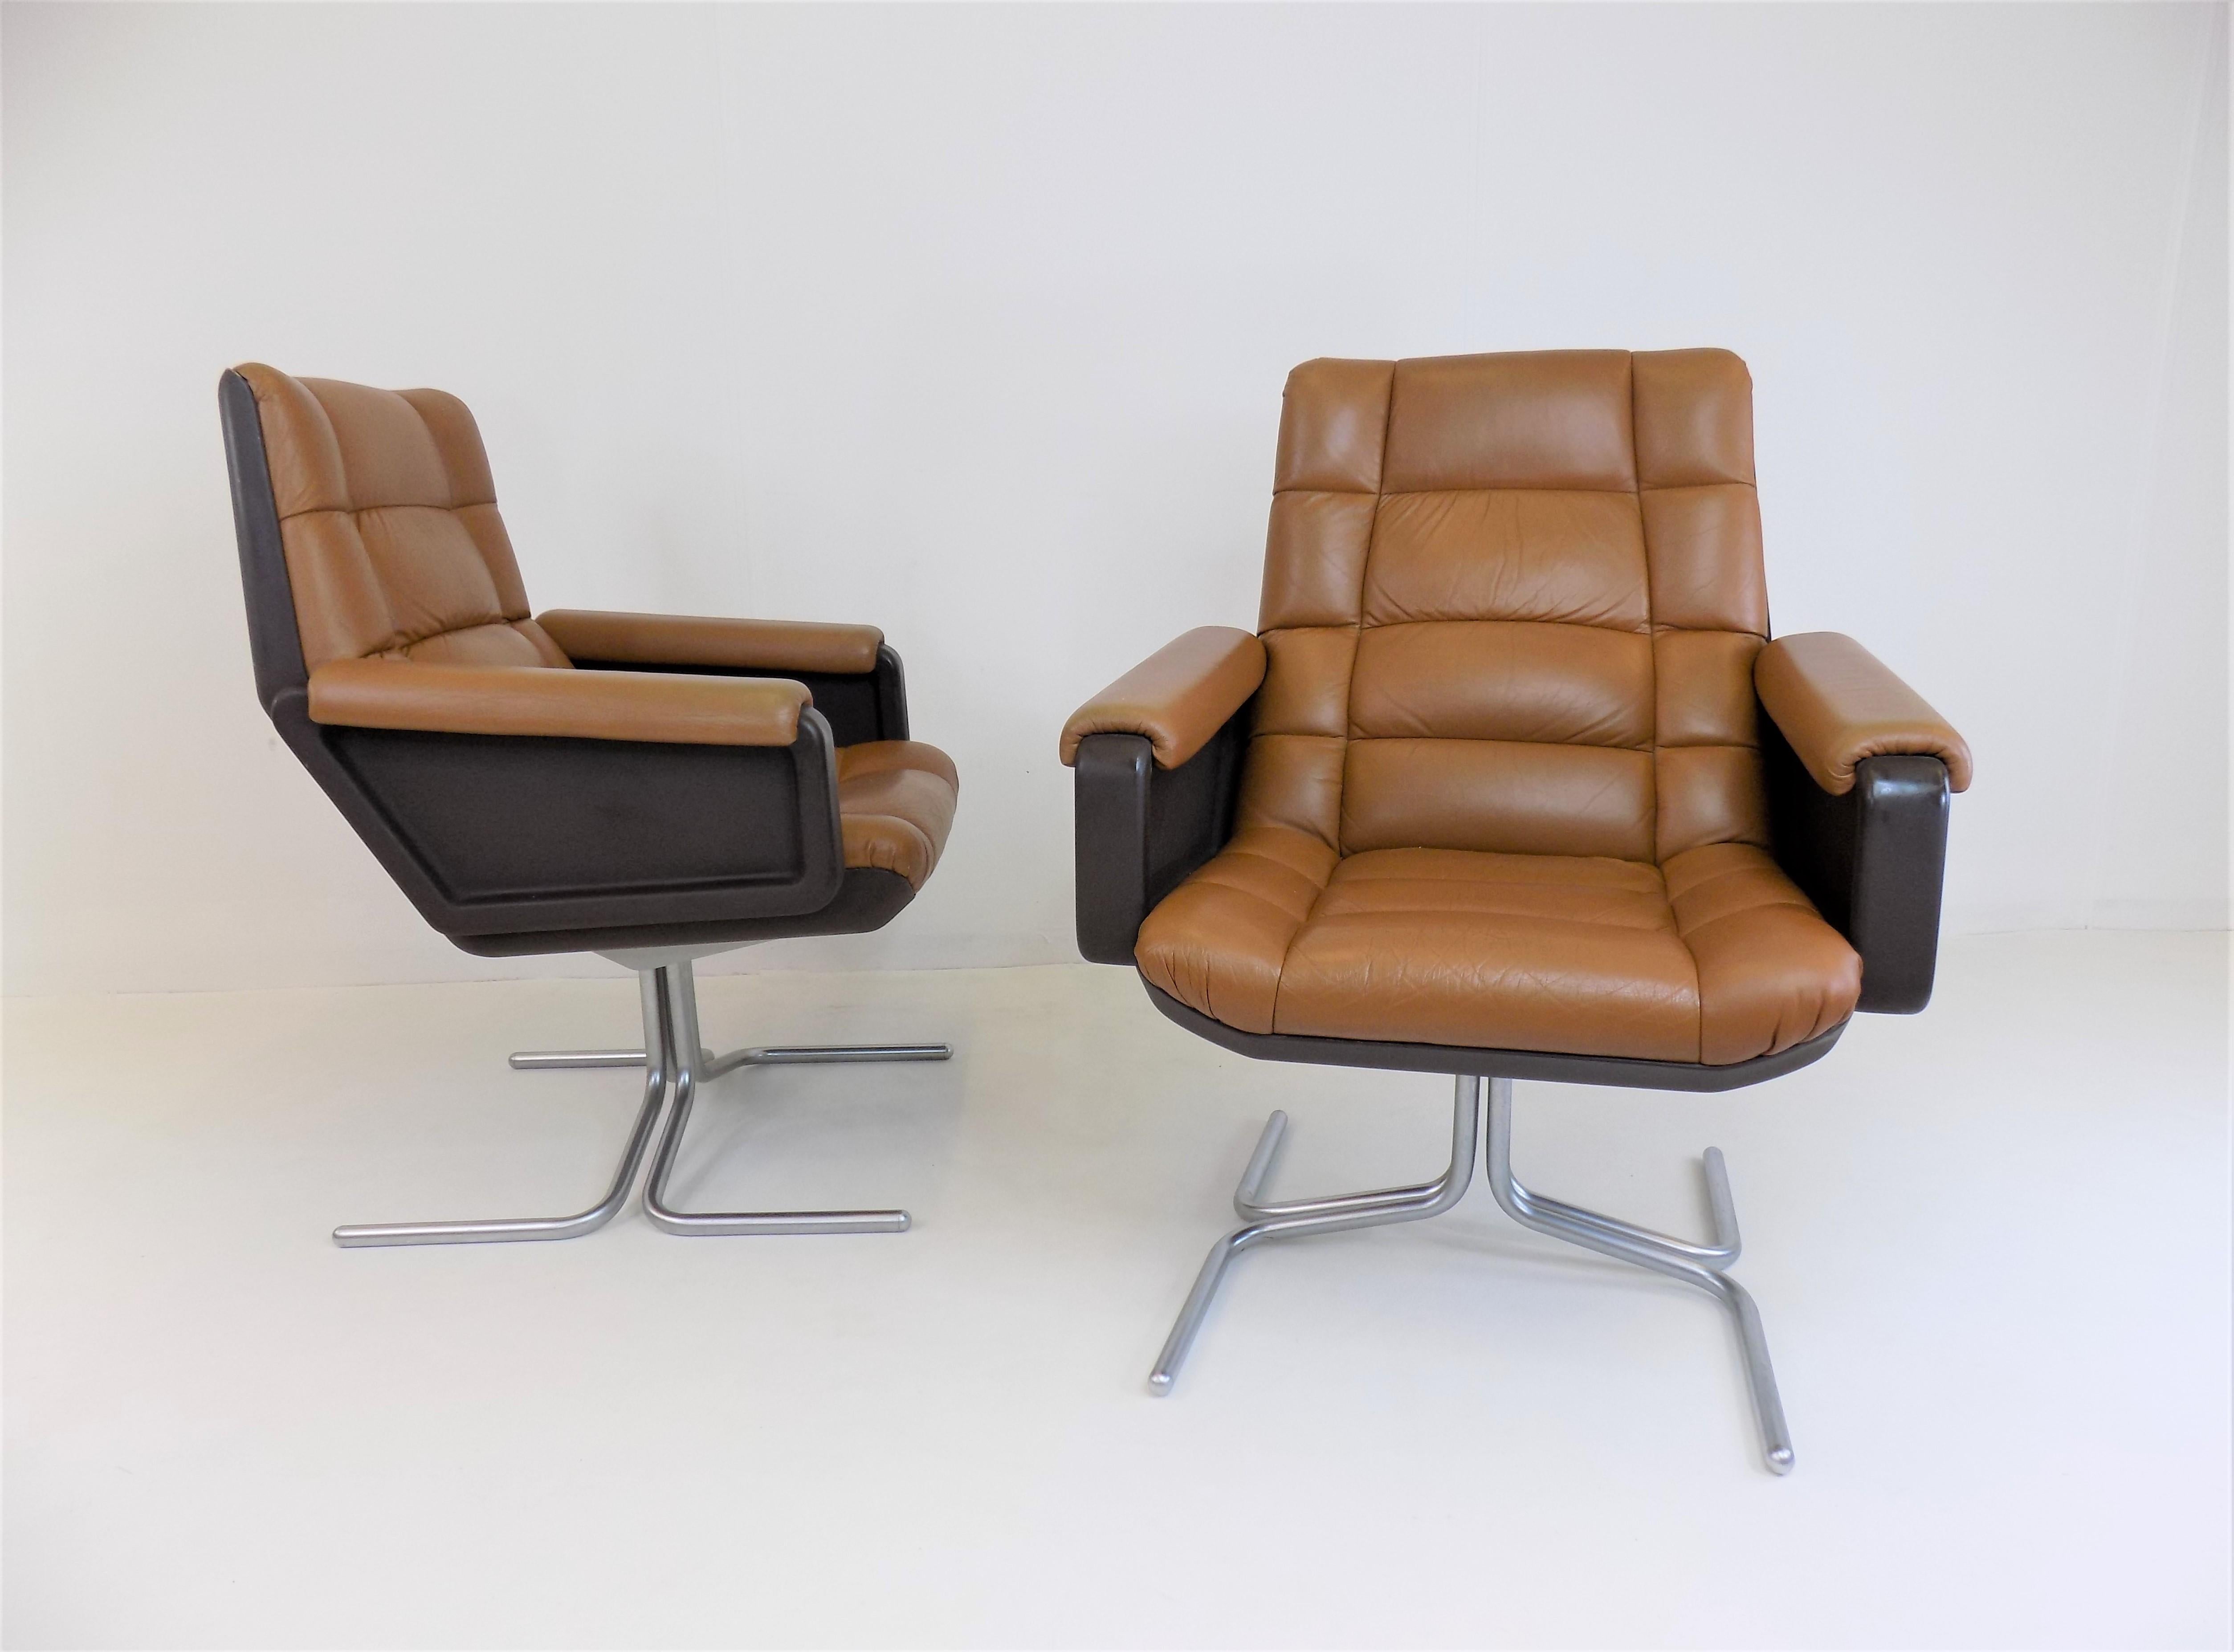 Ces deux fauteuils en cuir Seat 150 sont de fantastiques représentants de l'ère spatiale. Le cuir souple, de couleur cognac et matelassé est en très bon état. Les coques en plastique marron des dossiers présentent de légères traces d'usure. La base